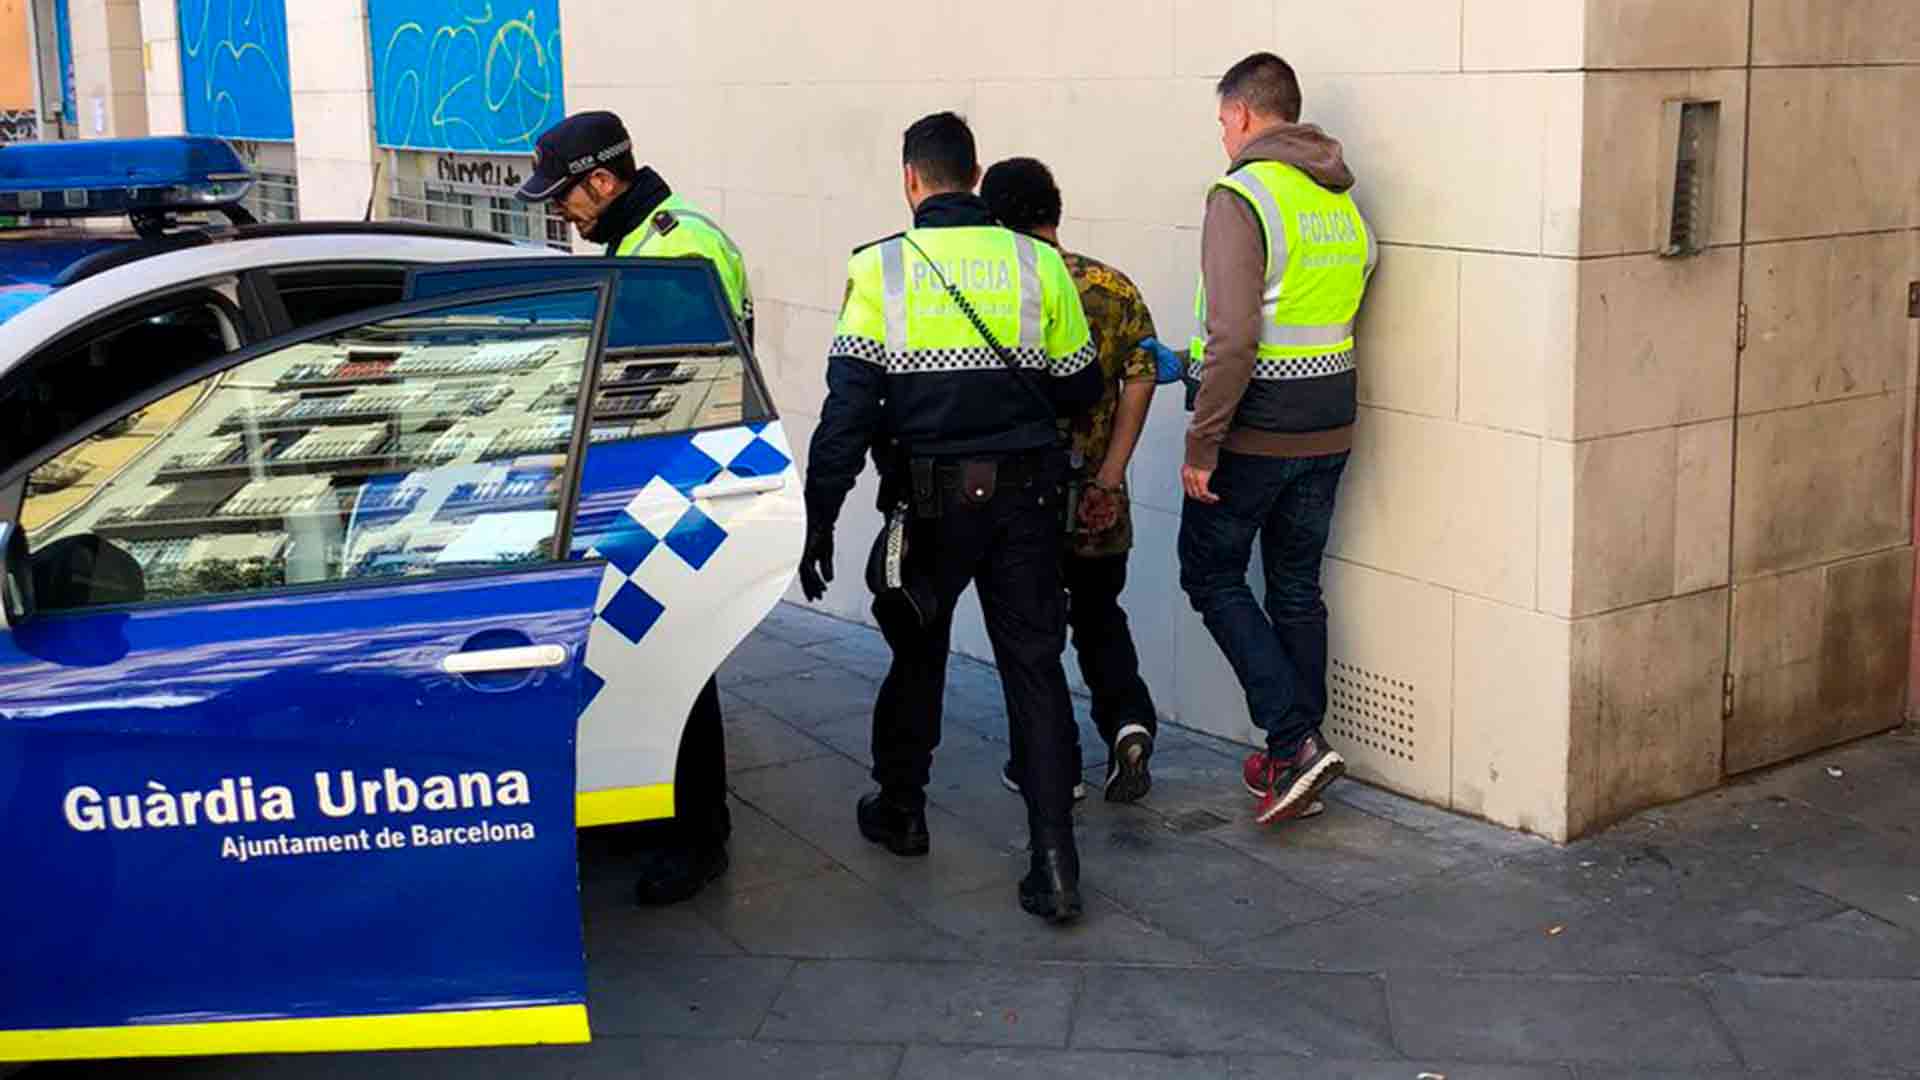 La Guardia Urbana precinta una asociación cannábica de Barcelona por tráfico de drogas